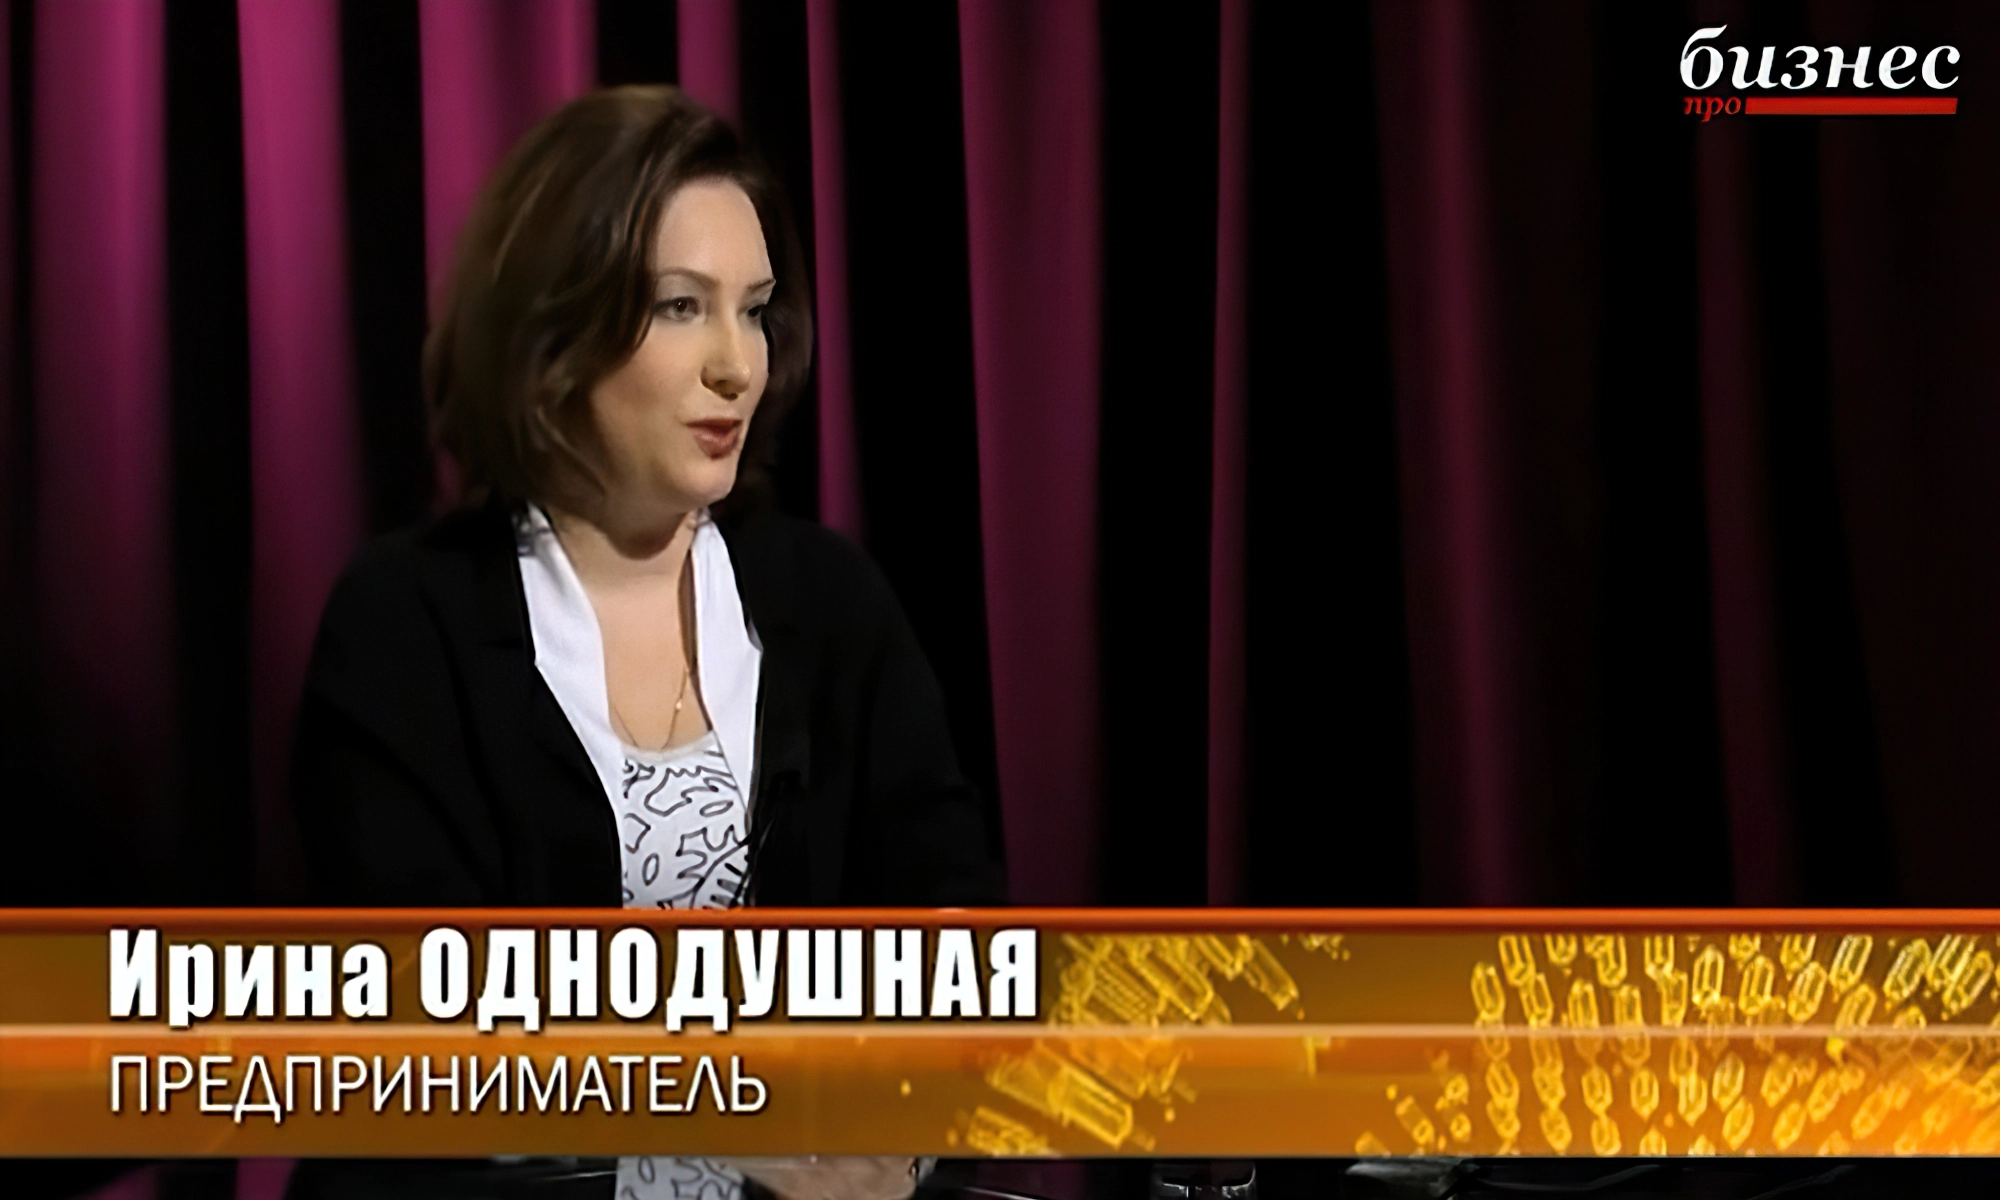 Ирина Однодушная — Элитный Ведущий Национальный Лидер сетевой компании «Mary Kay»